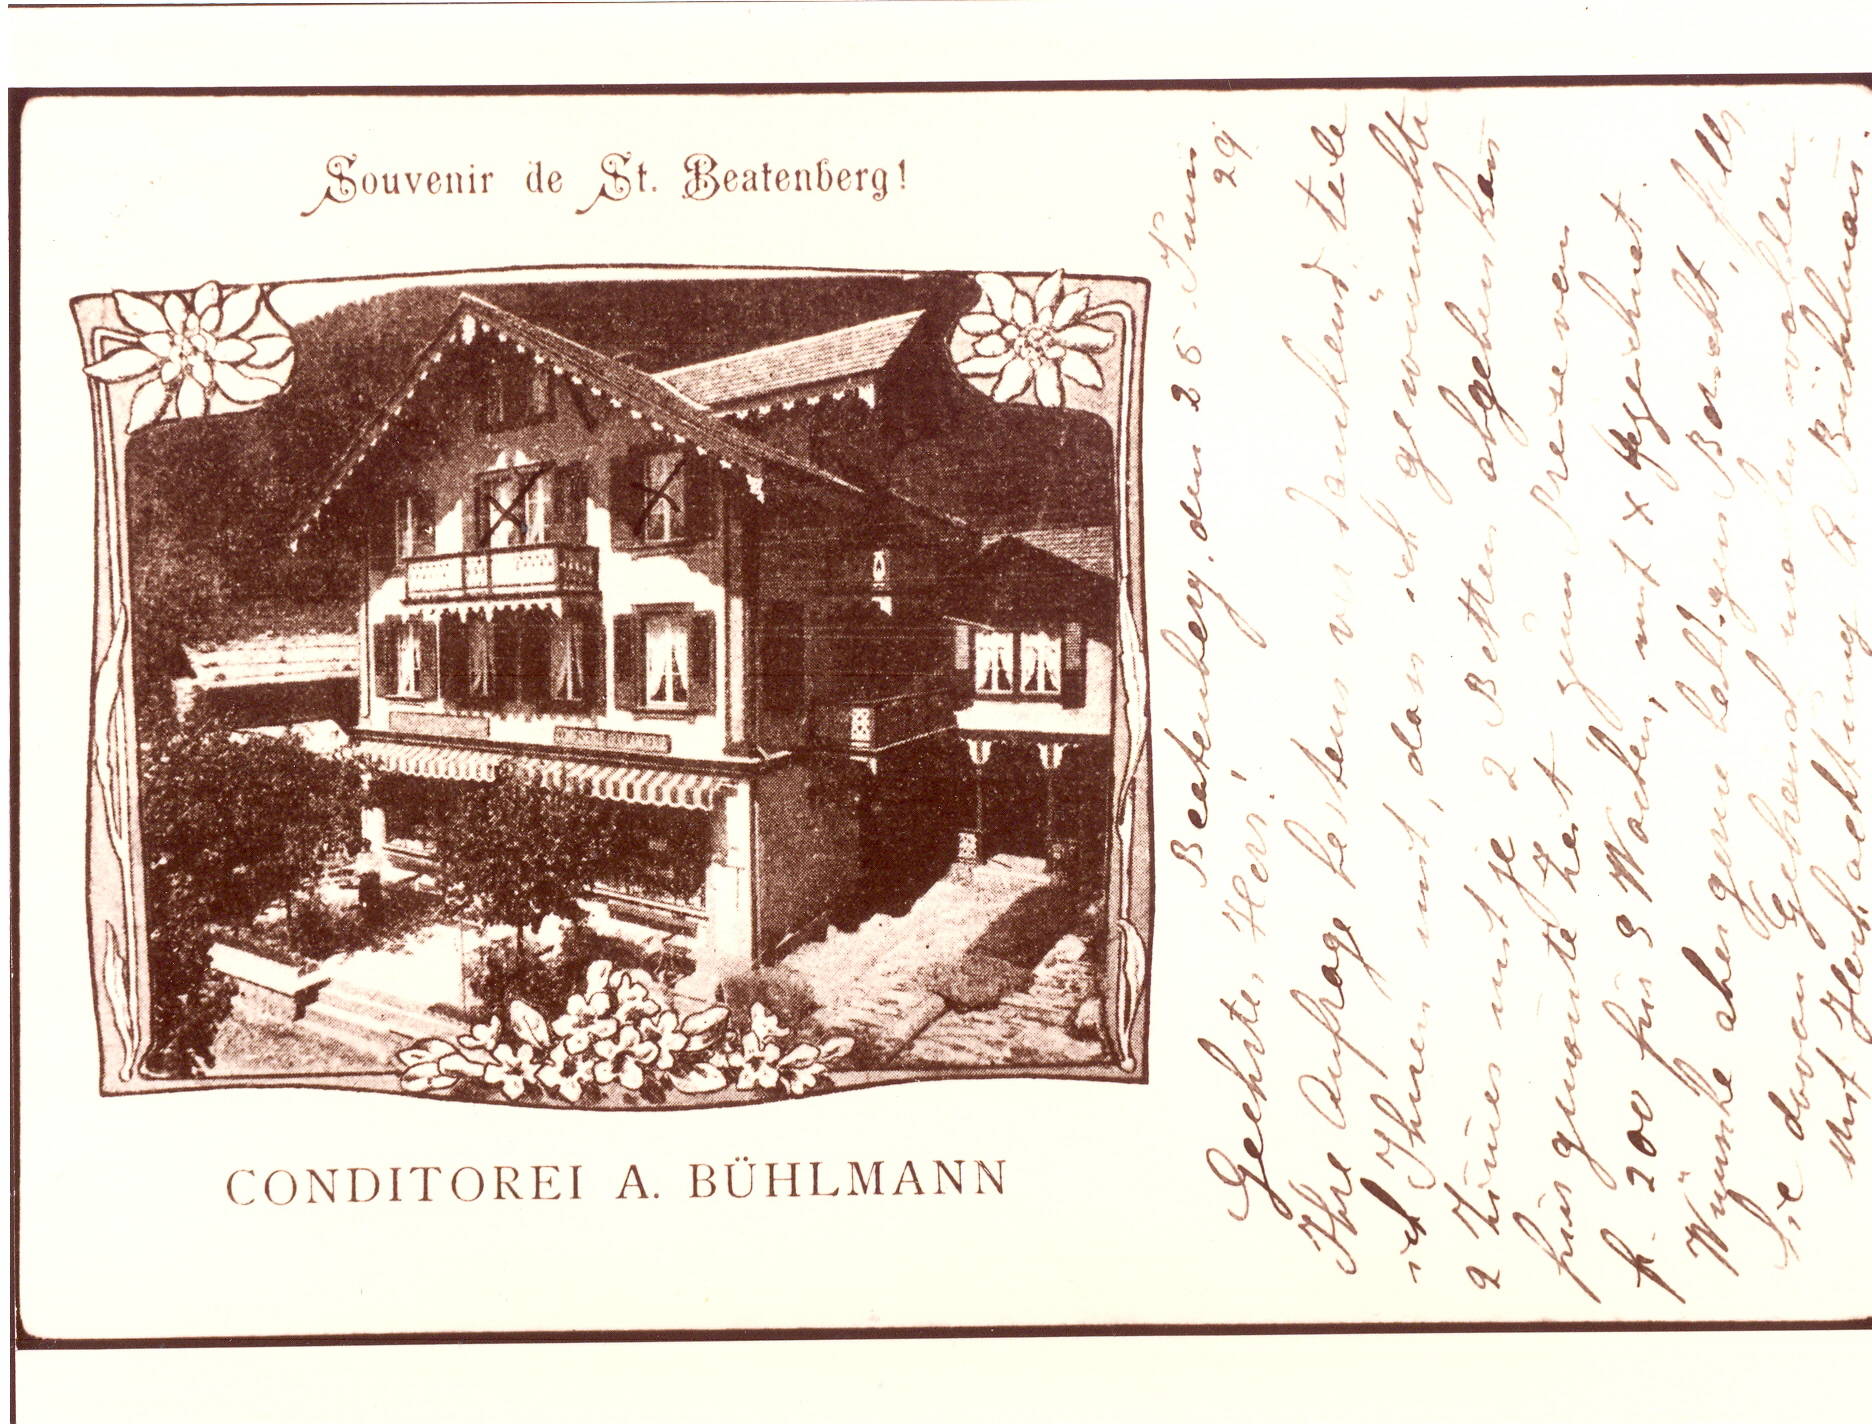 Postkarte aus dem Jahr 1929